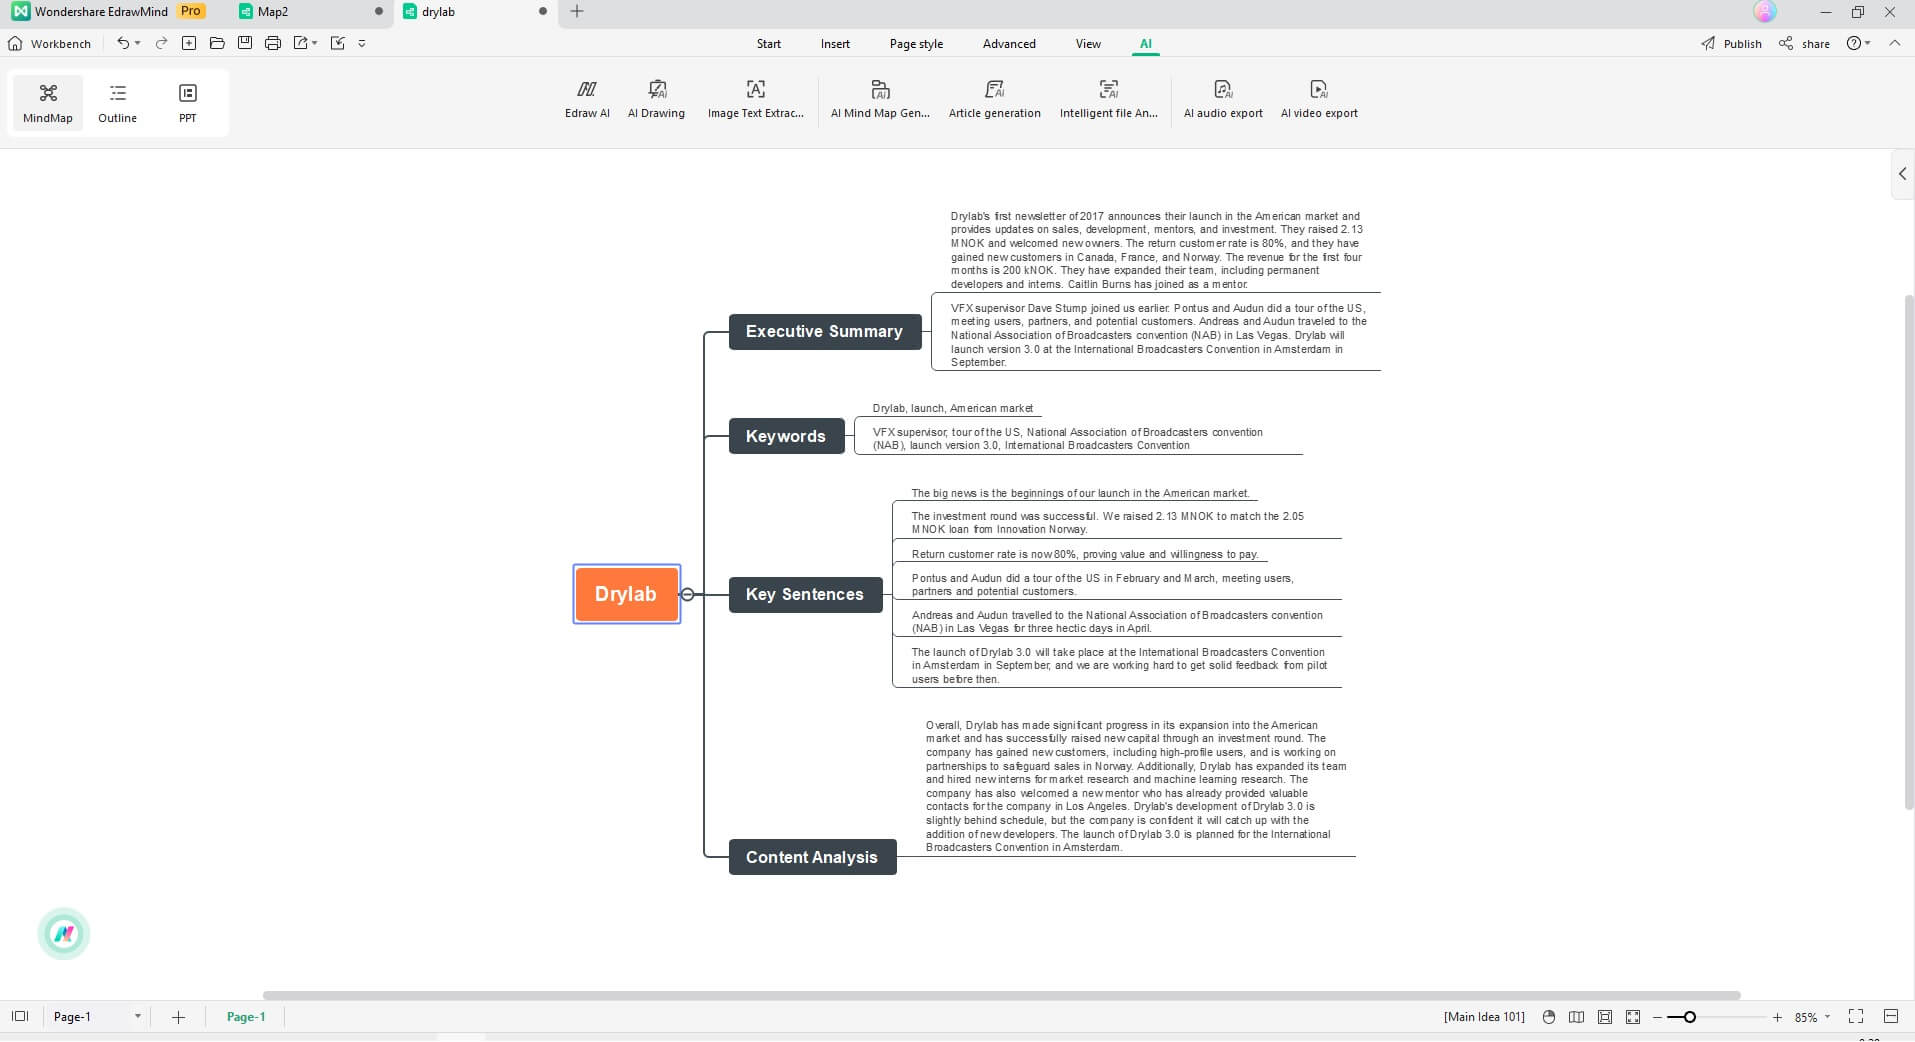 transforme documento pdf analisado em mapa mental